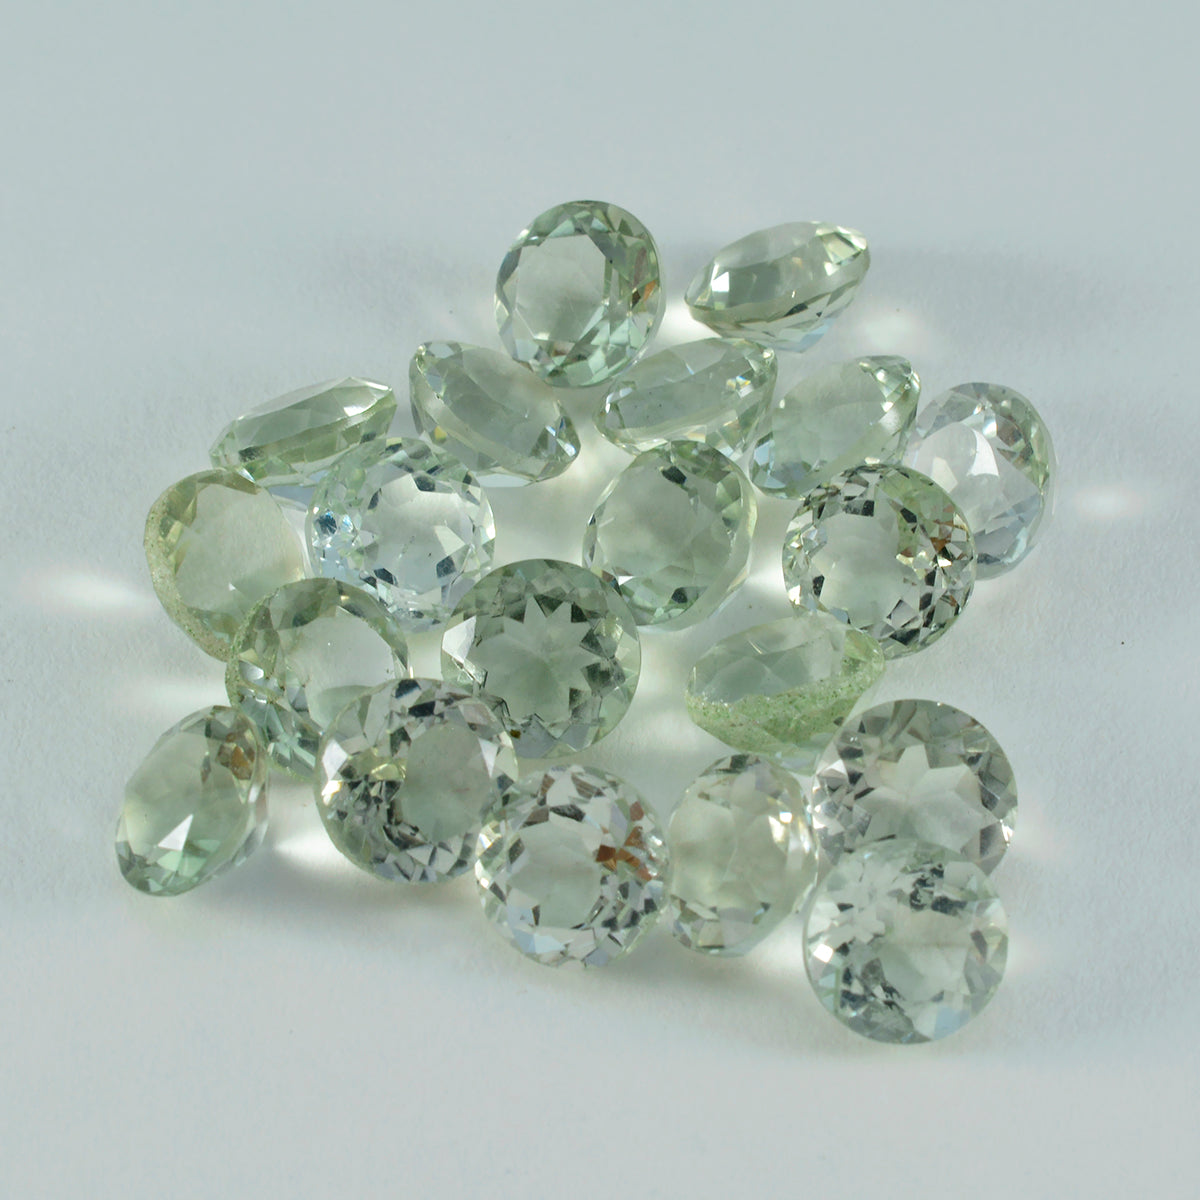 riyogems 1шт зеленый аметист ограненный 6х6 мм круглая форма красивый качественный свободный камень